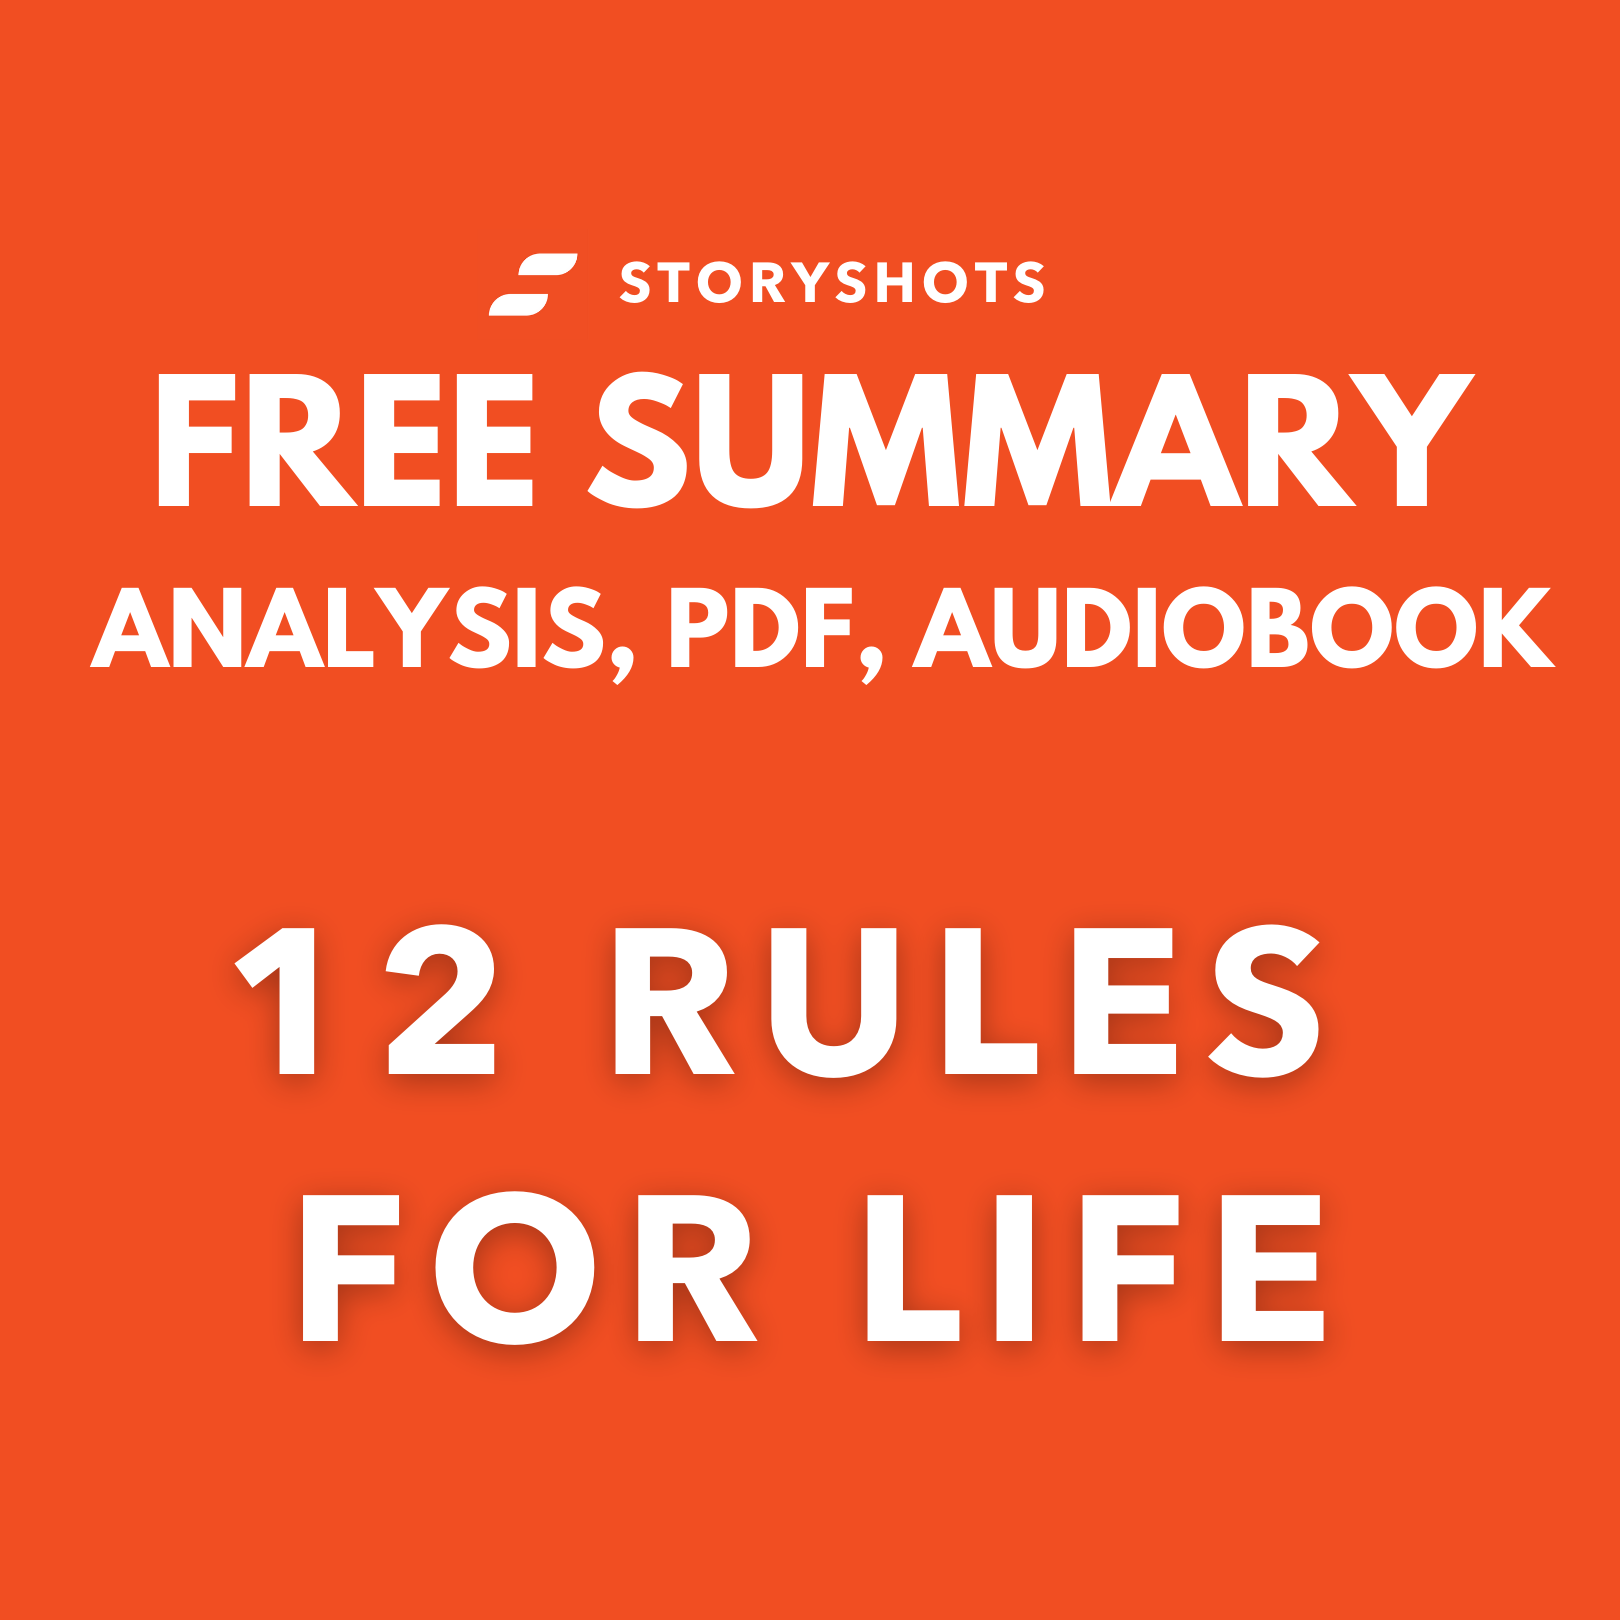 Almindeligt have tillid Nordamerika 12 Rules for Life Free Summary Review | Jordan Peterson | PDF